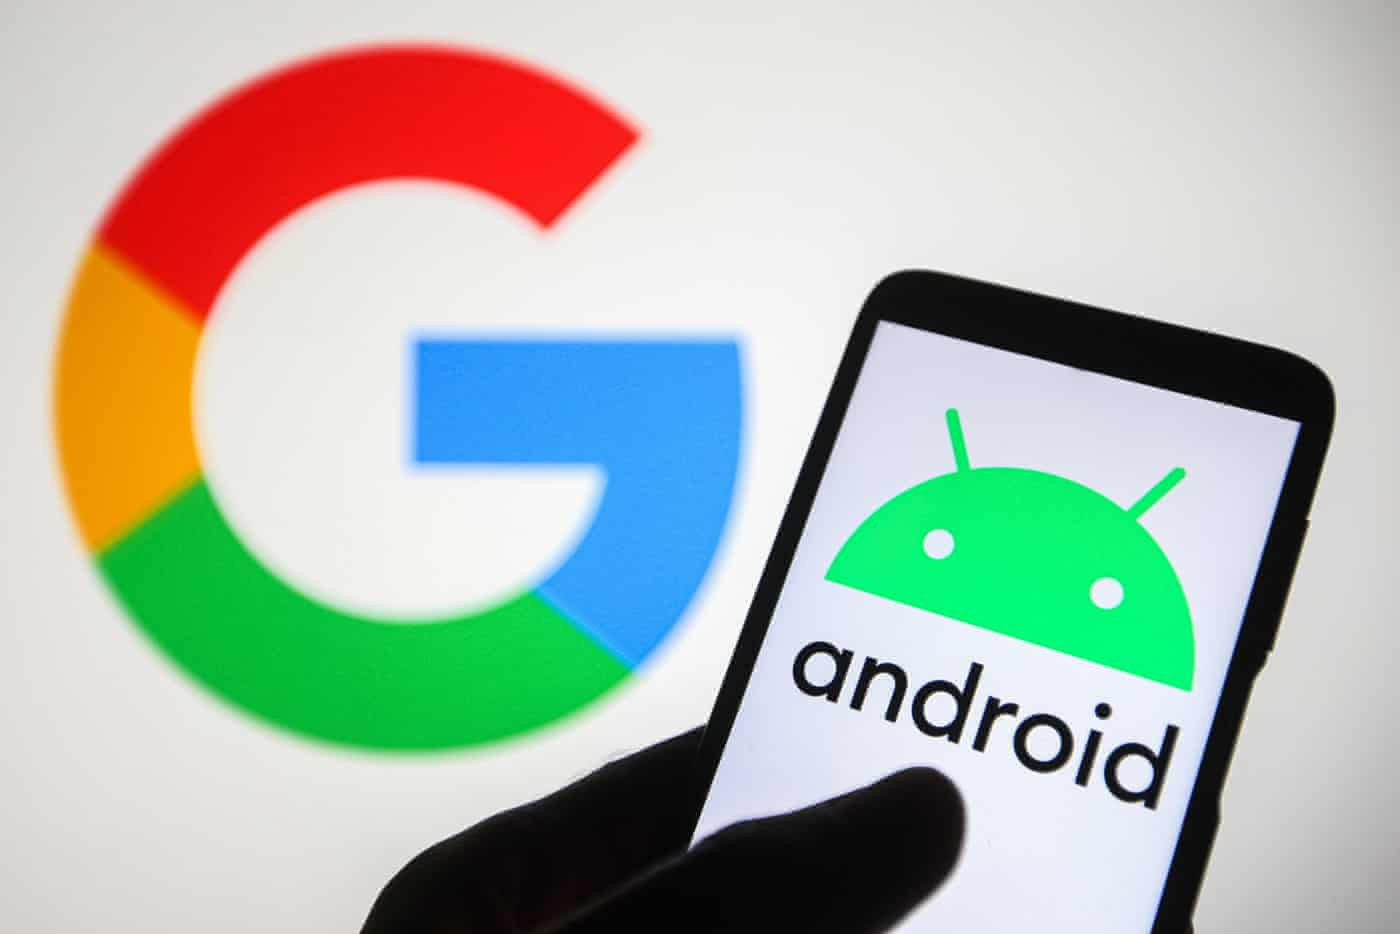 Google thử nghiệm phương thức thanh toán mới cho người dùng Android